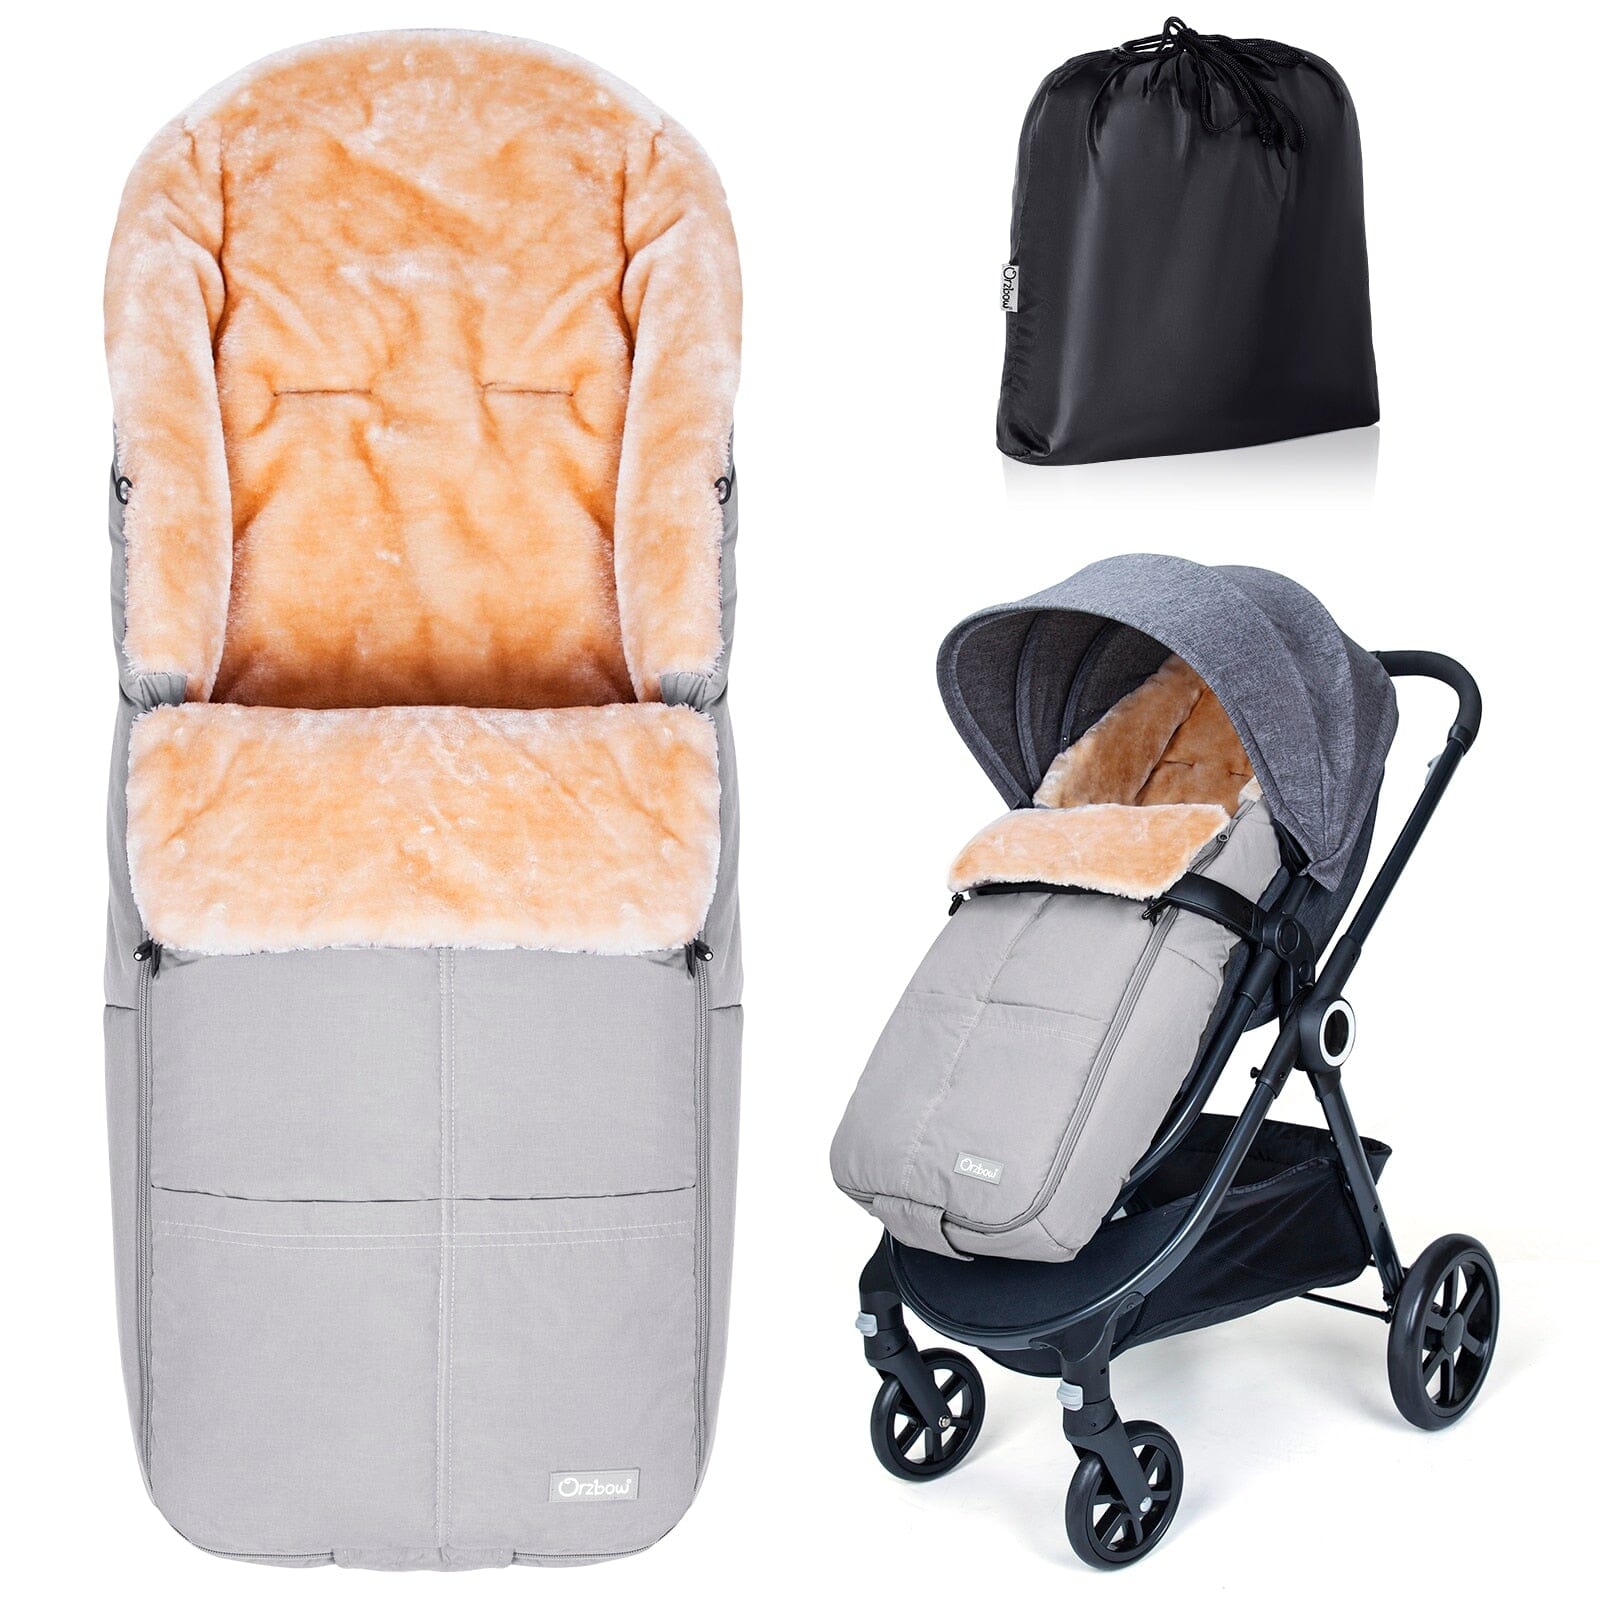 Baby Products Online - Baby stroller waterproof sleeping bag